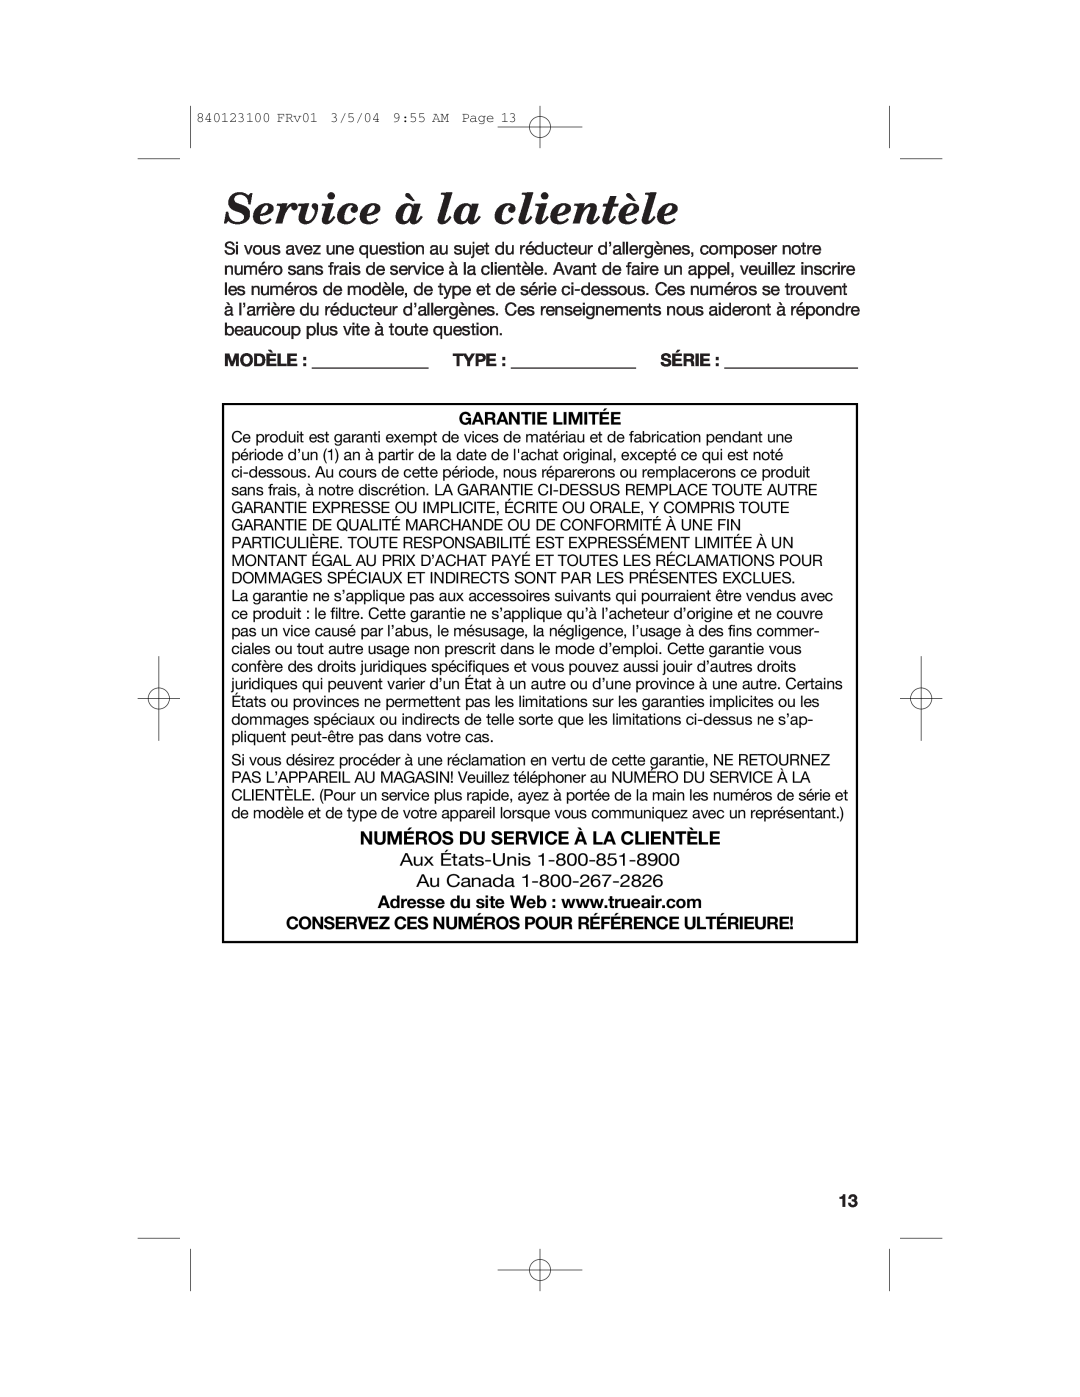 Hamilton Beach 840123100 manual Service à la clientèle, Numéros Du Service À La Clientèle, Garantie Limitée 